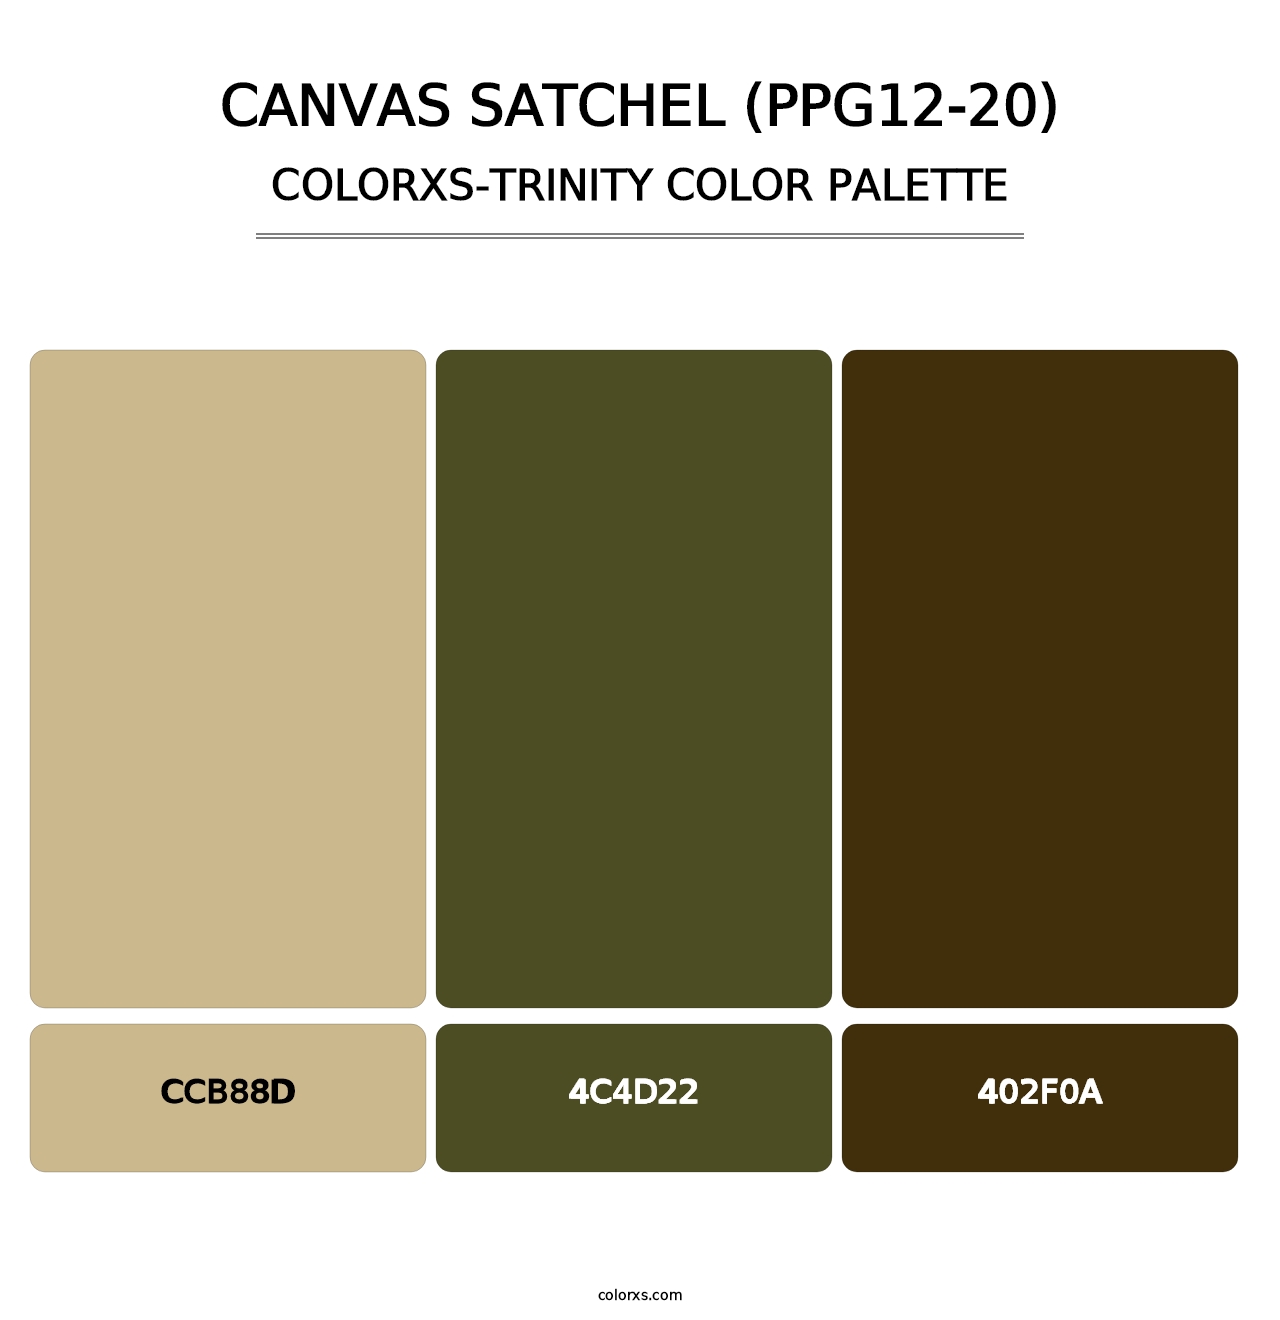 Canvas Satchel (PPG12-20) - Colorxs Trinity Palette